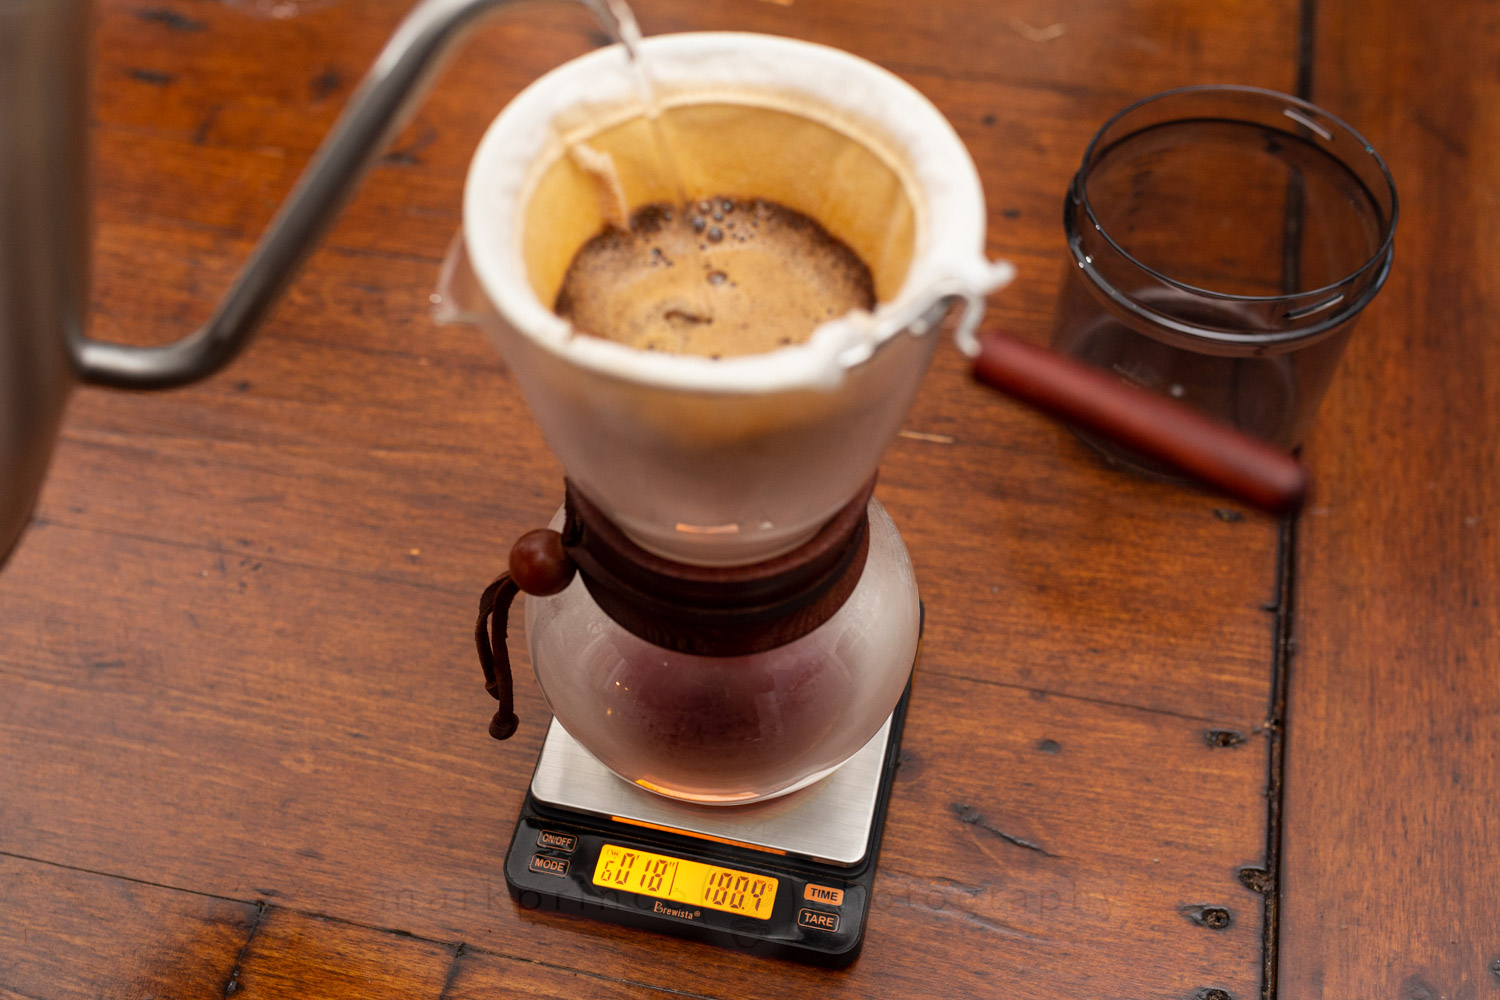 Brewista Smart Scale II » CoffeeGeek